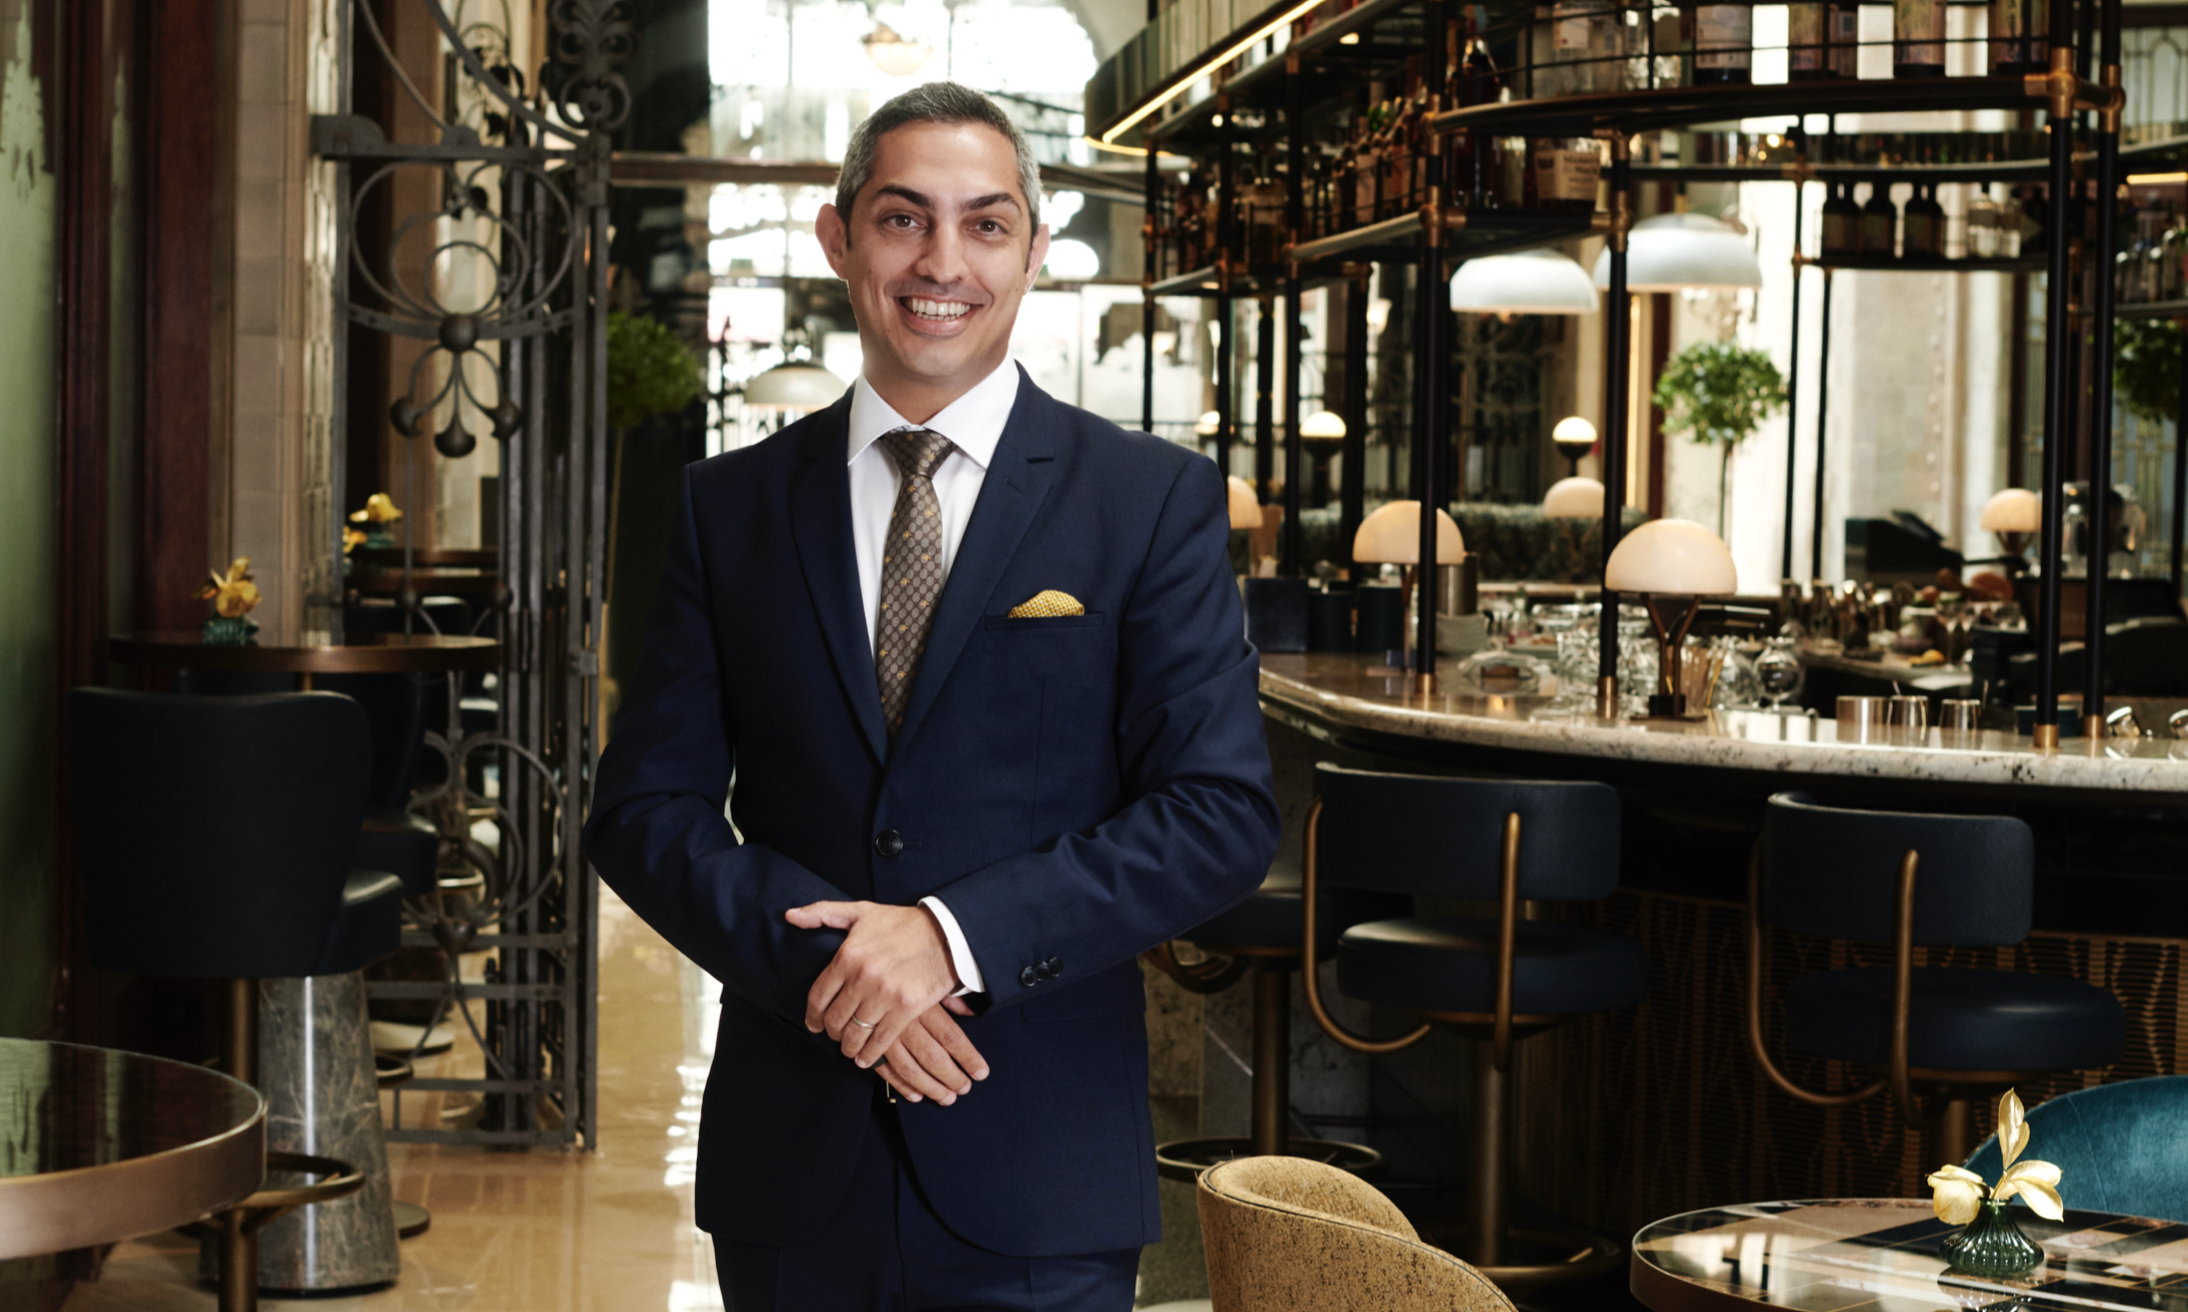 Federico Giovine Named Gresham Palace Hotel Manager